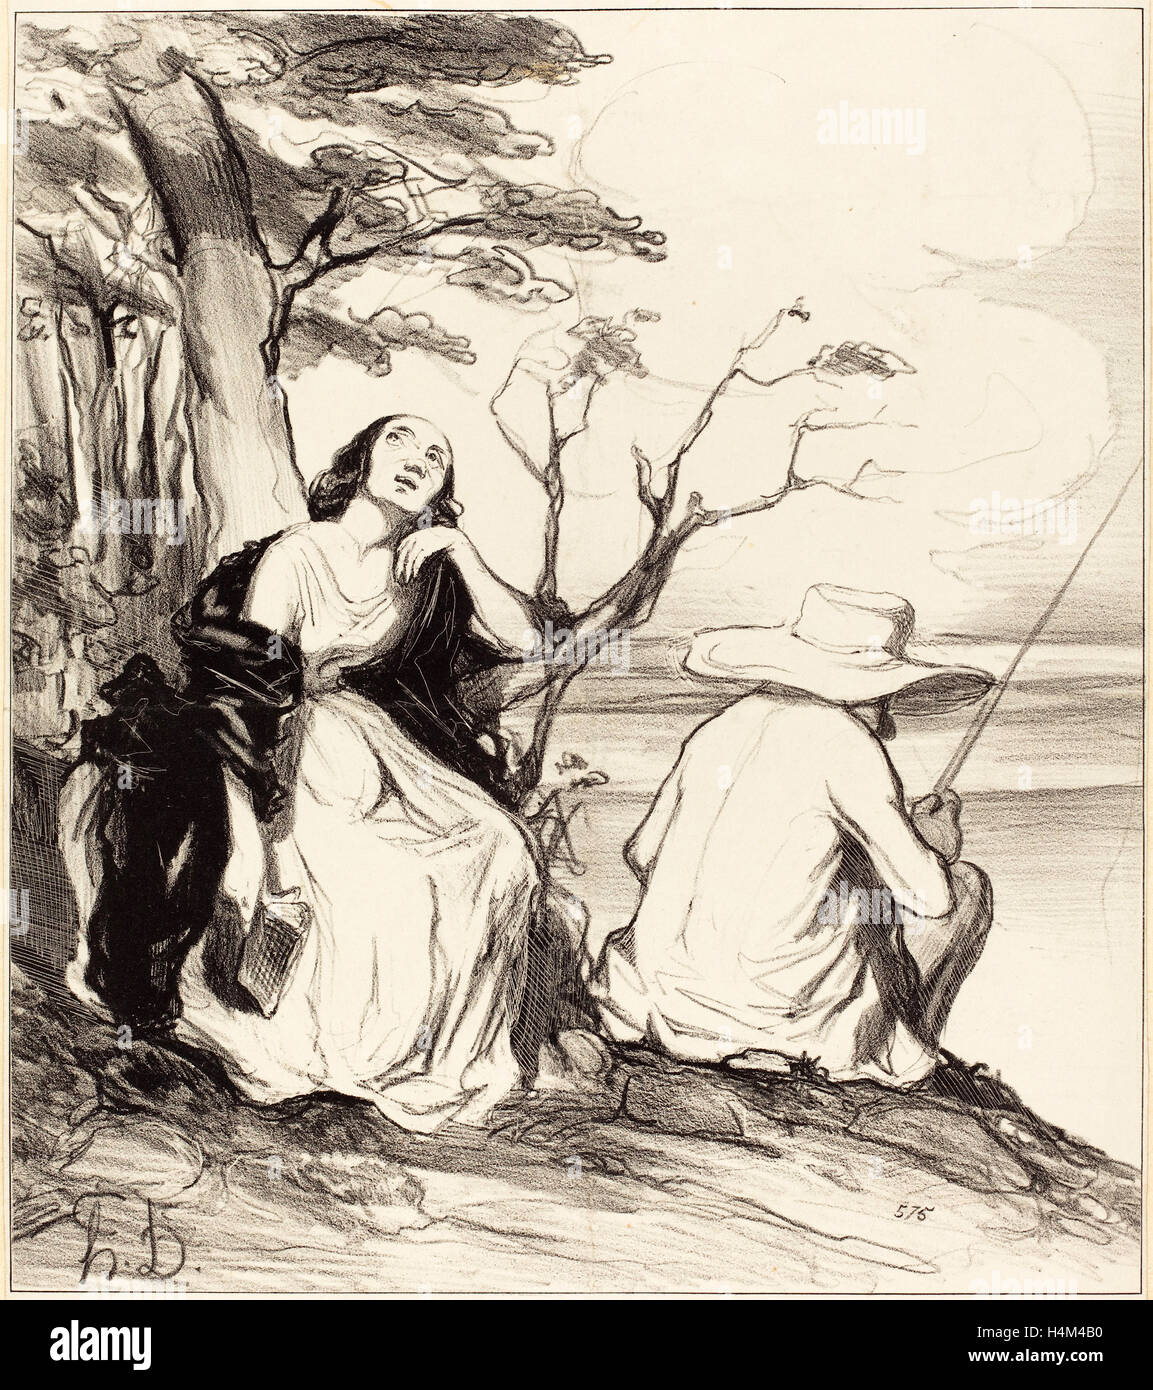 Honoré Daumier (French, 1808 - 1879), O douleur! avoir rêvé un époux, 1844, lithograph Stock Photo